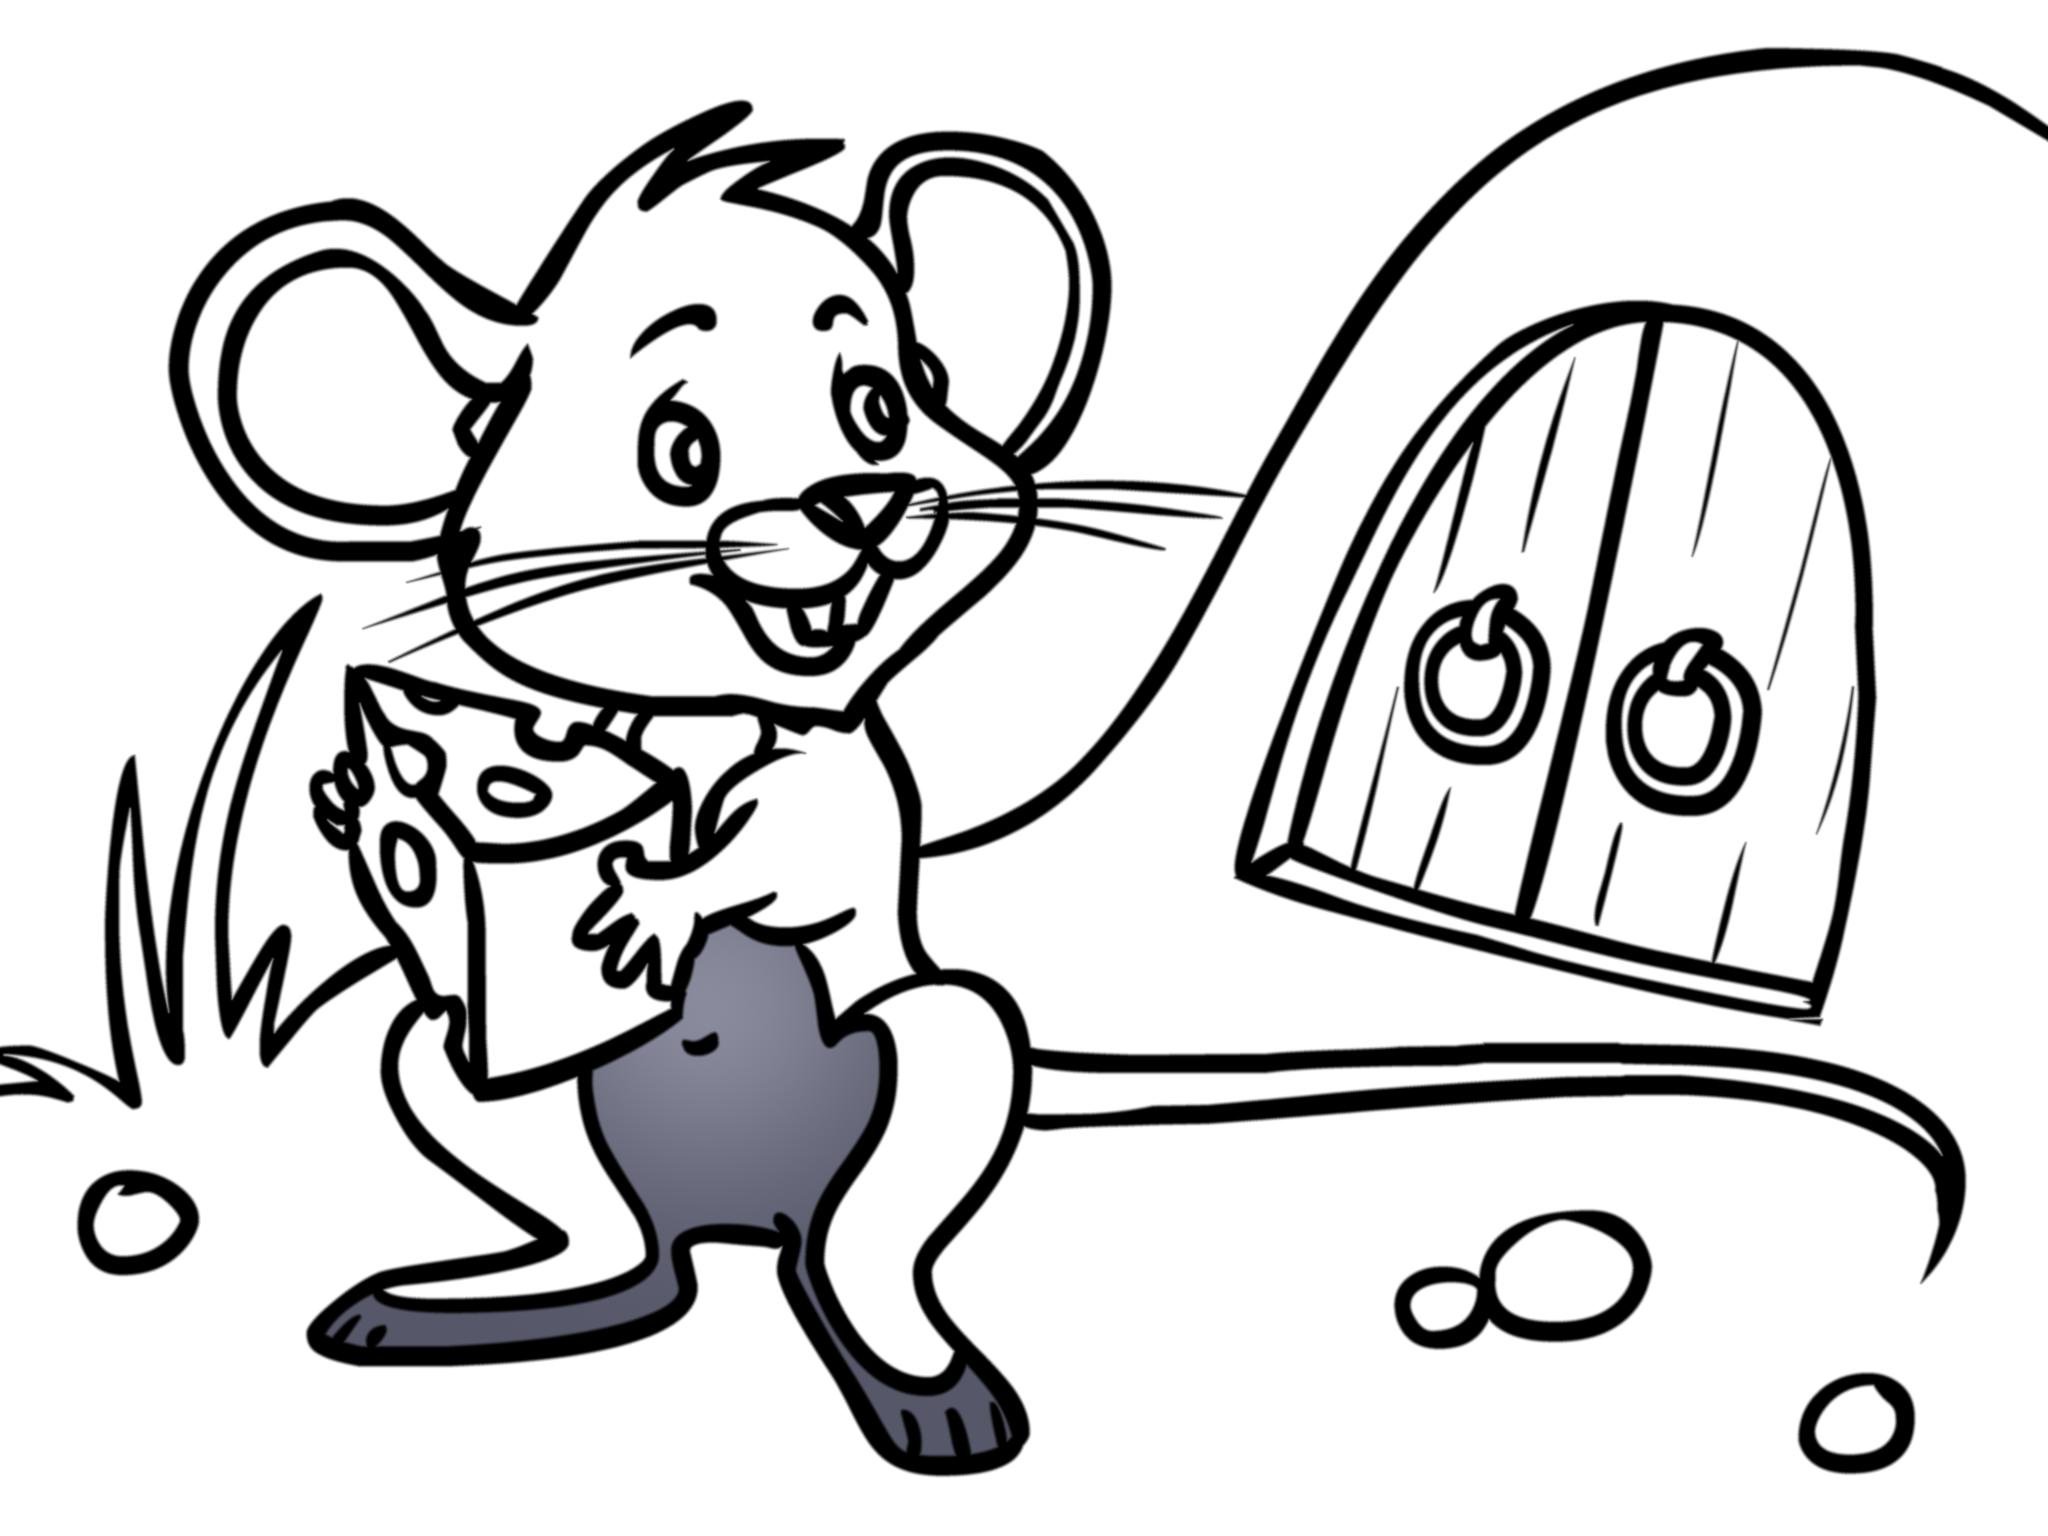 Раскраска мышь распечатать. Раскраска мышка. Раскраска мышонок. Мышь раскраска для детей. Мышонок раскраска для детей.